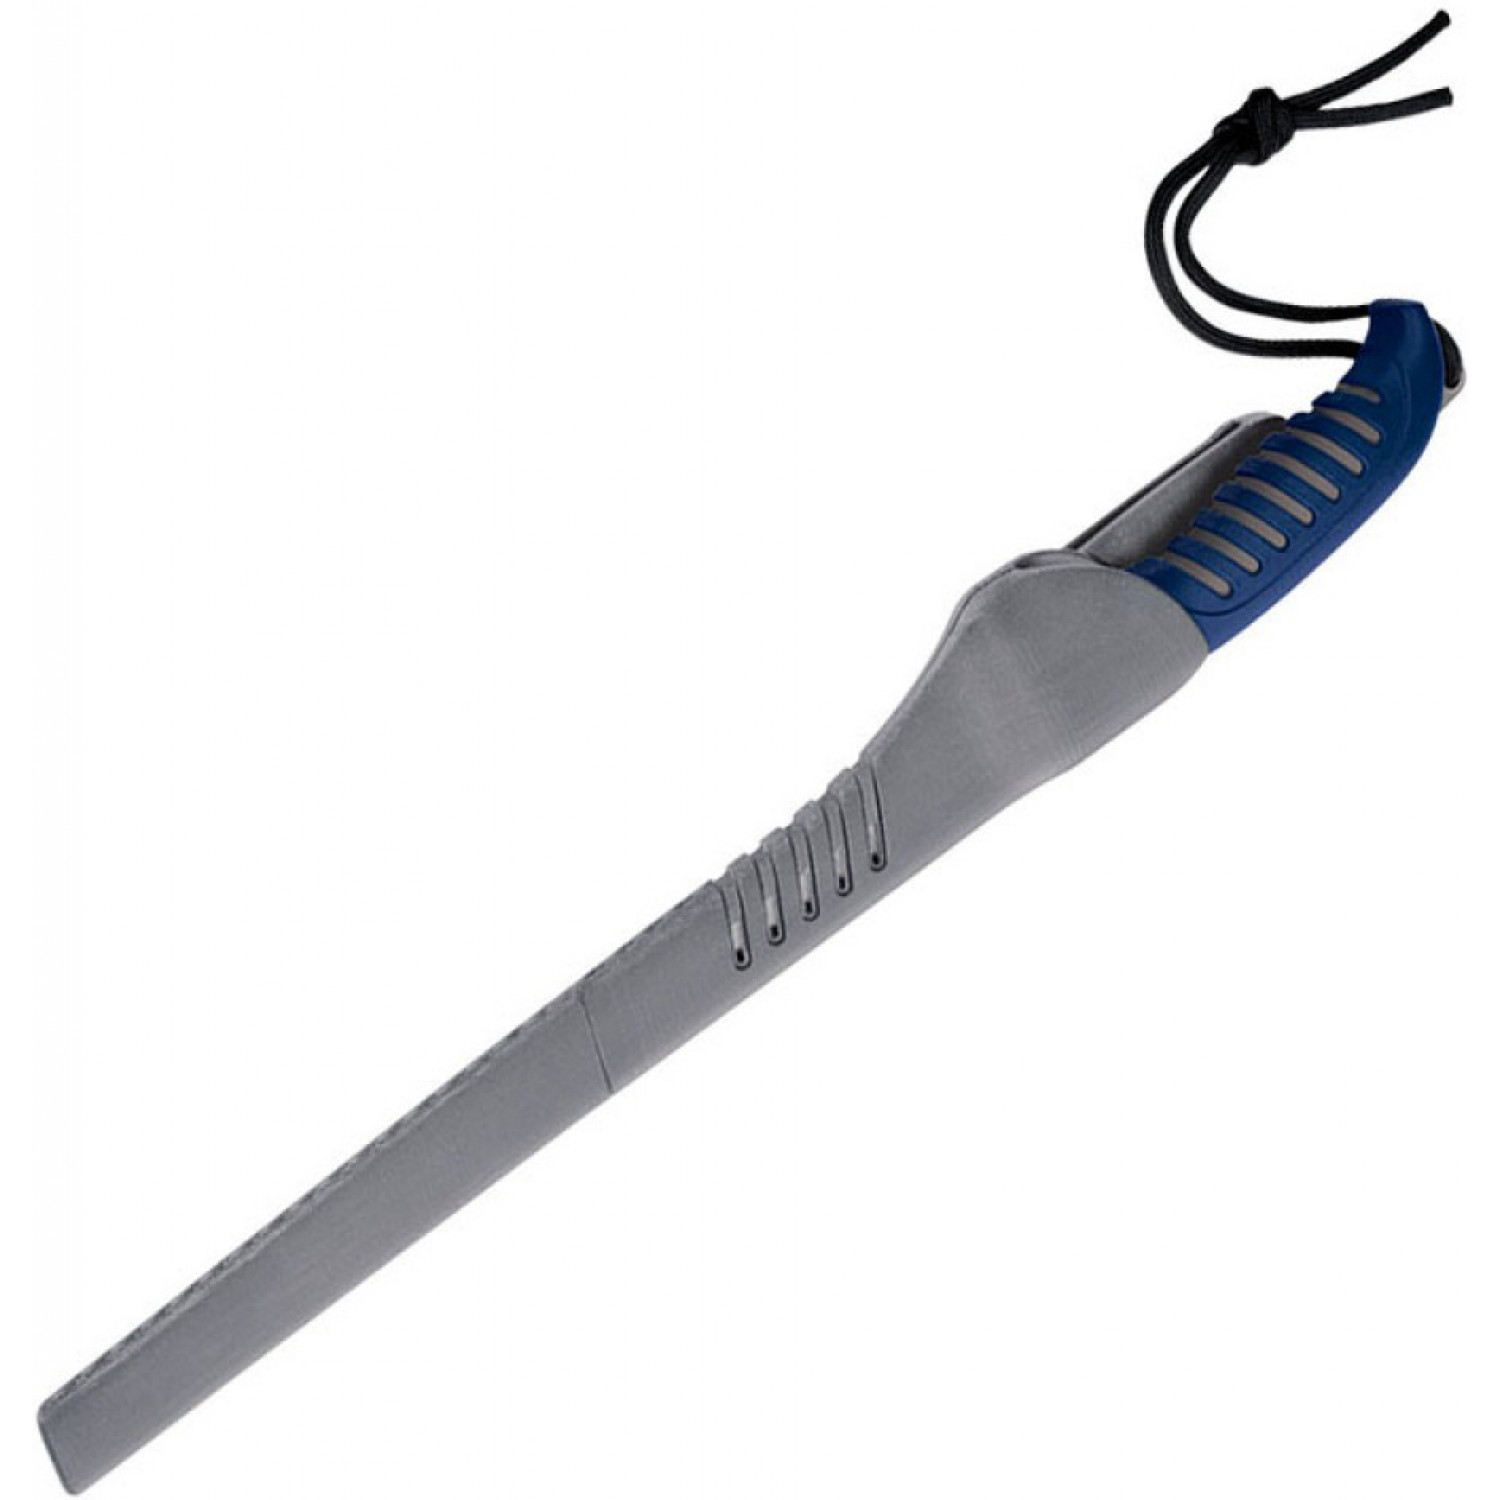 Филейный нож Buck Silver Creek 9 5/8" Fillet Knife 0225BLS, сталь 420J2, рукоять термопластик от Ножиков